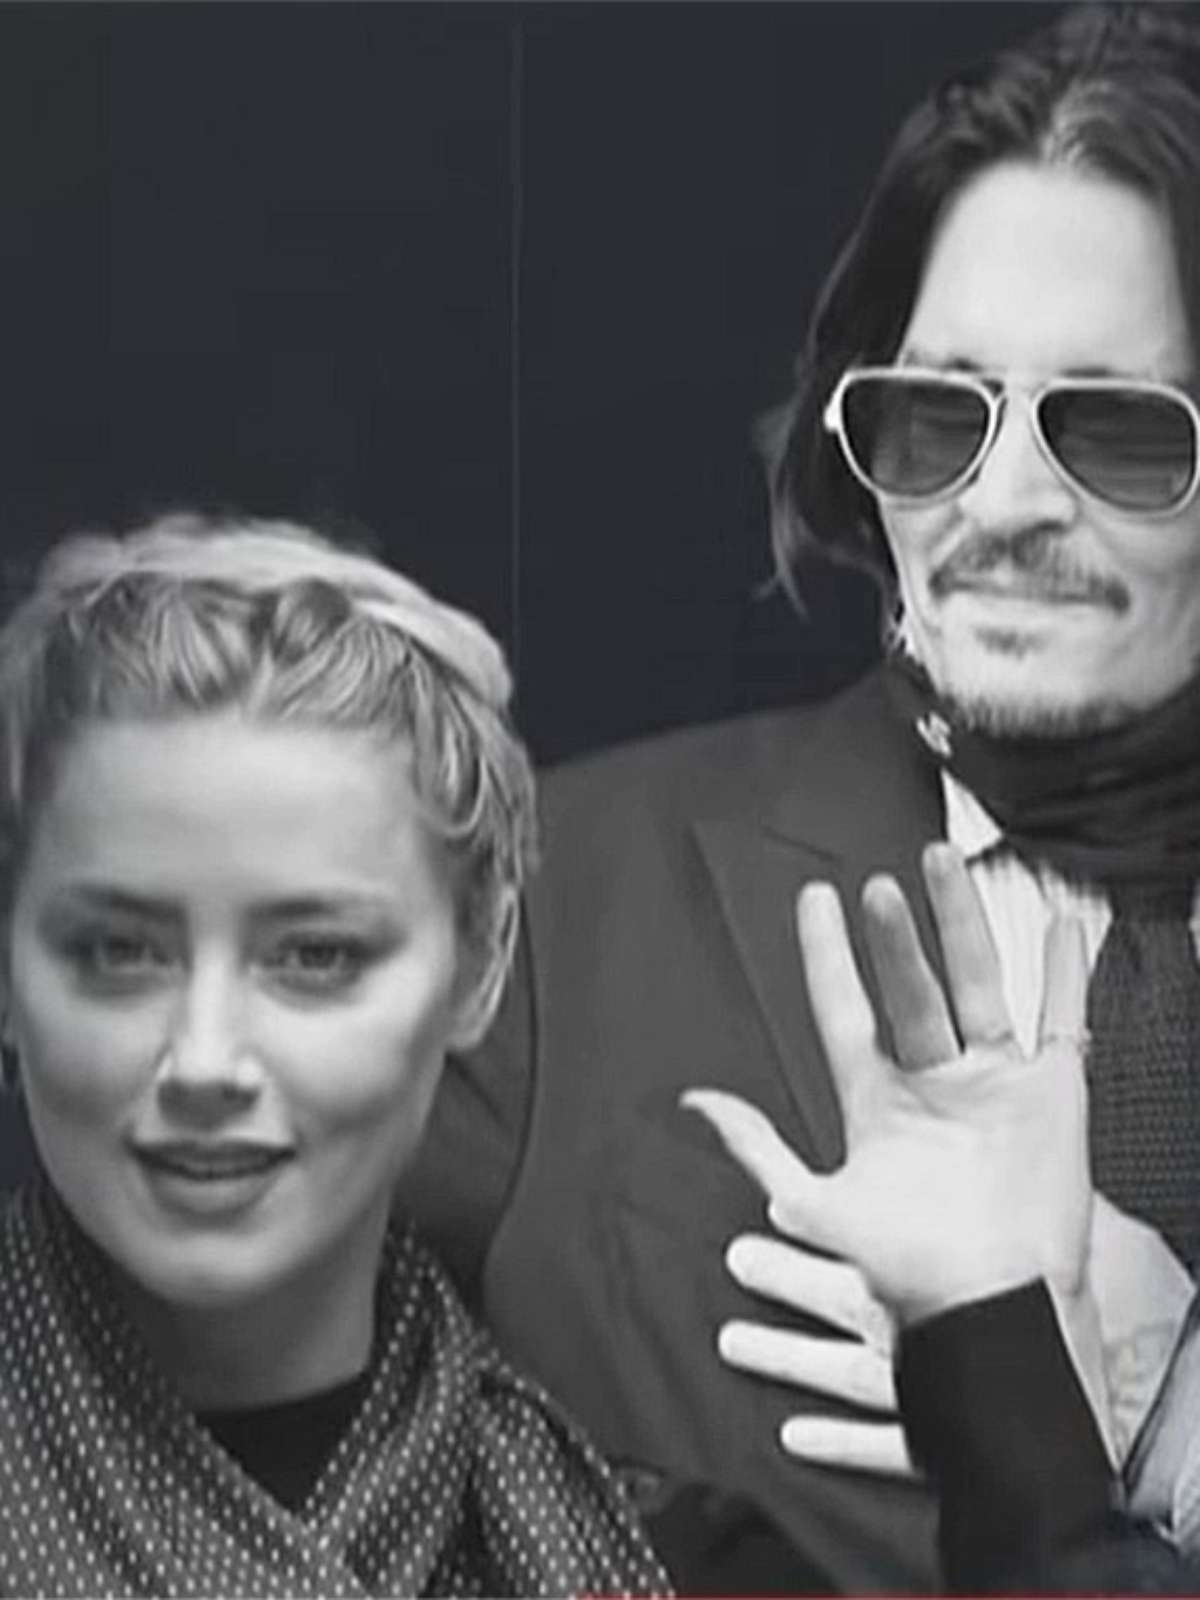 Amber Heard encerra processo contra Johnny Depp - Forbes